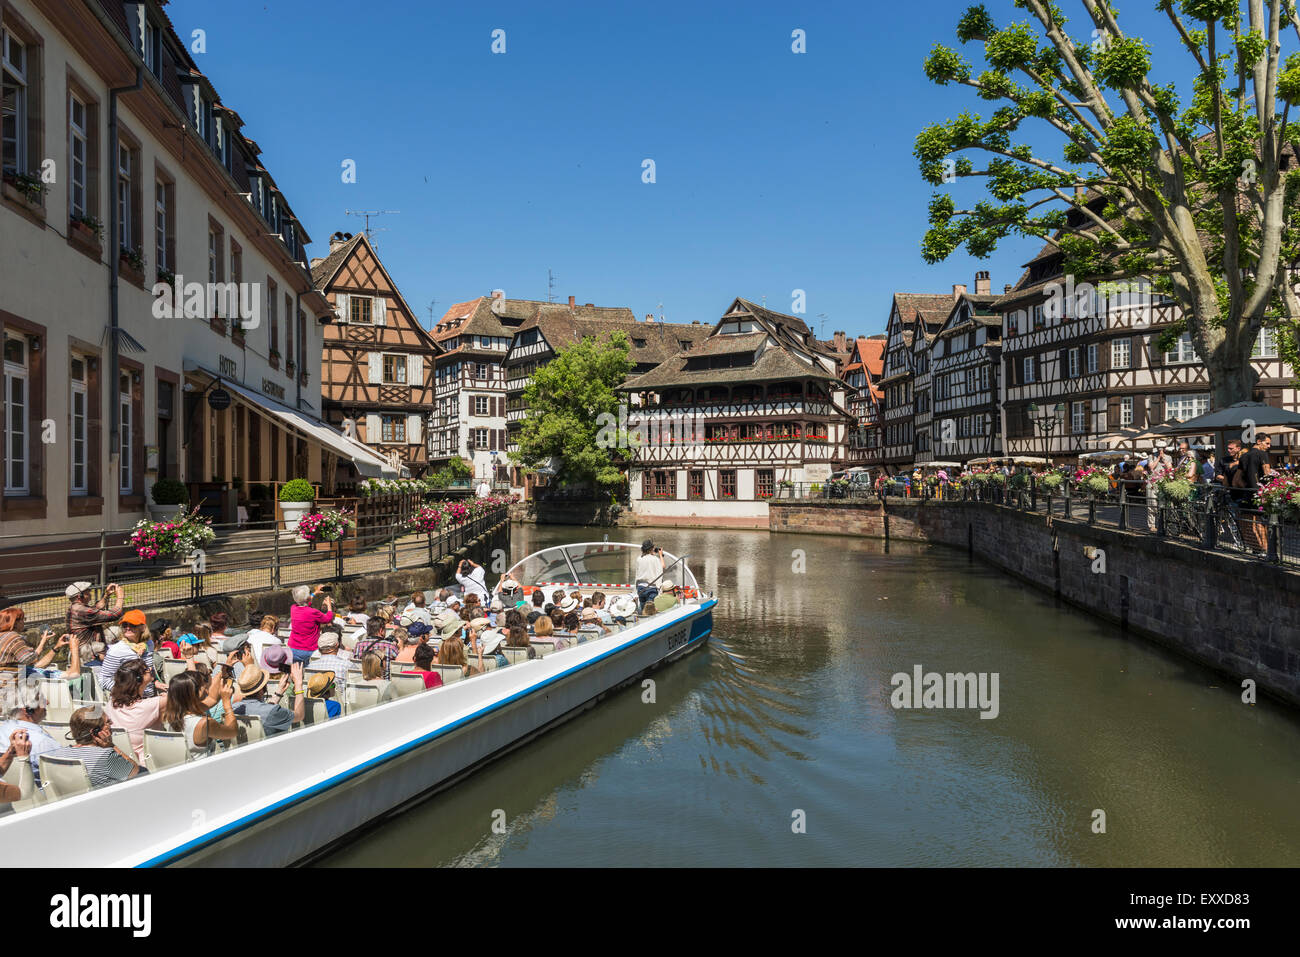 Excursion en bateau avec des touristes dans la vieille ville de La Petite France, Strasbourg, France, Europe Banque D'Images